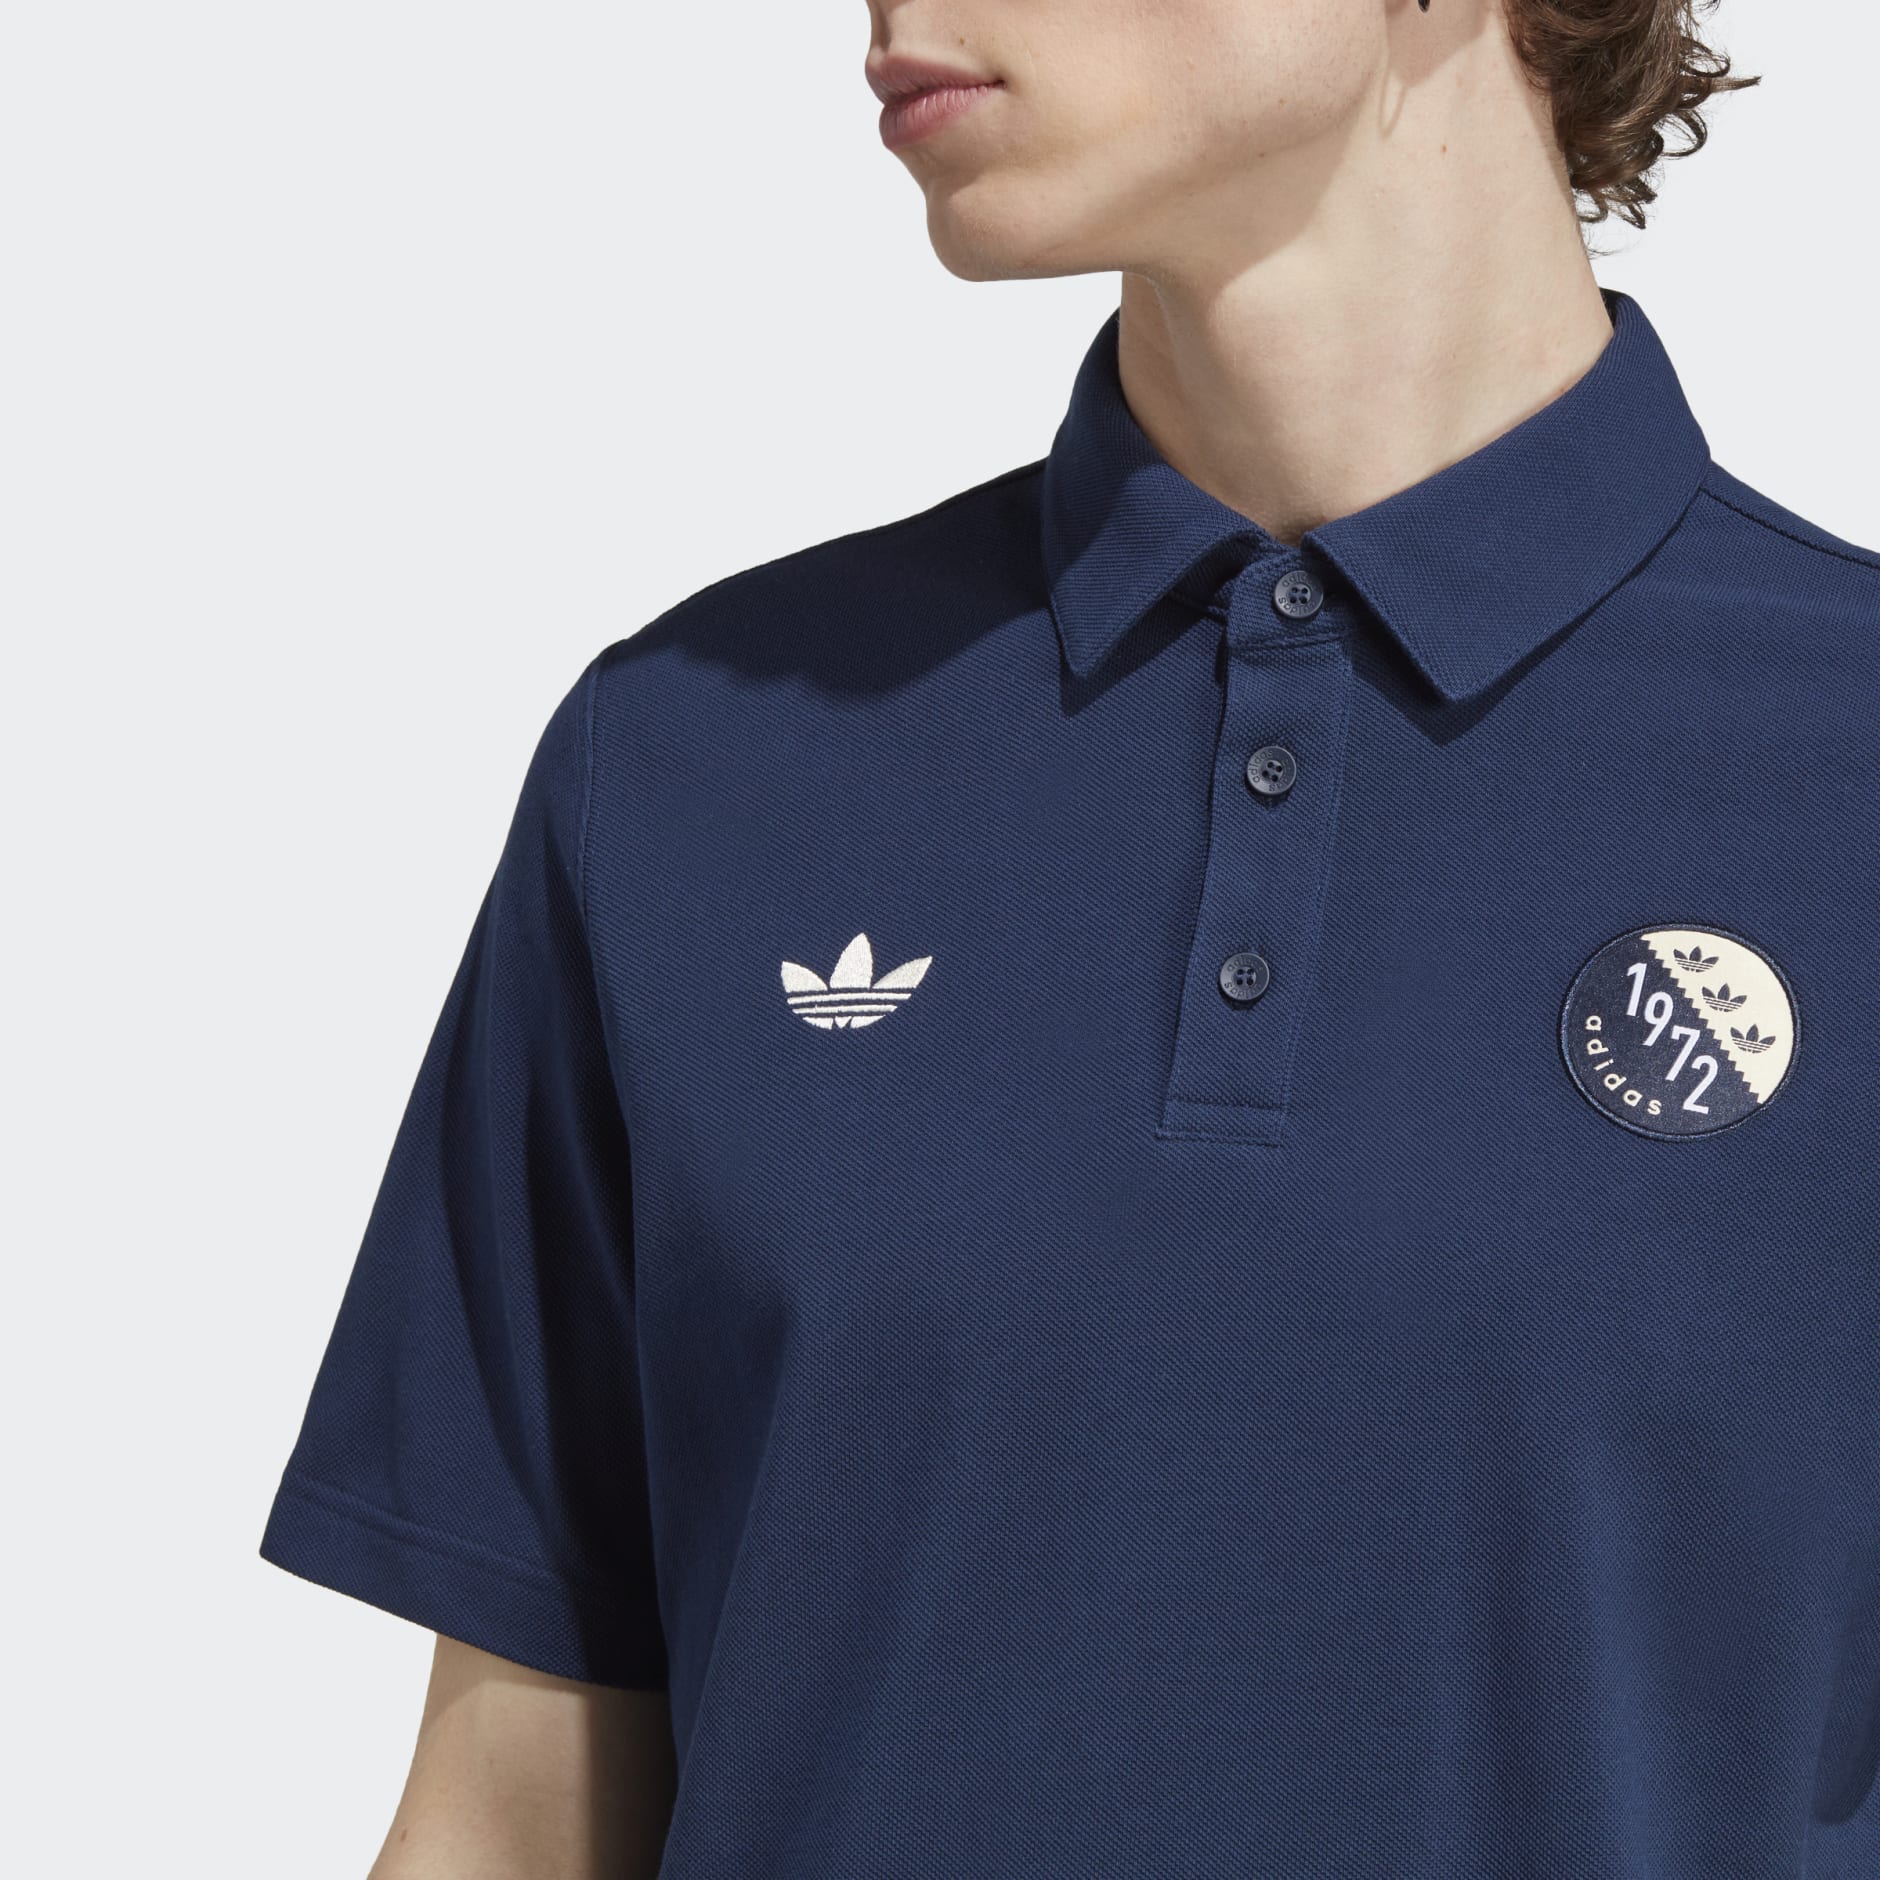 Åben Forhandle indhold Men's Clothing - Blokepop Polo Shirt - Blue | adidas Oman